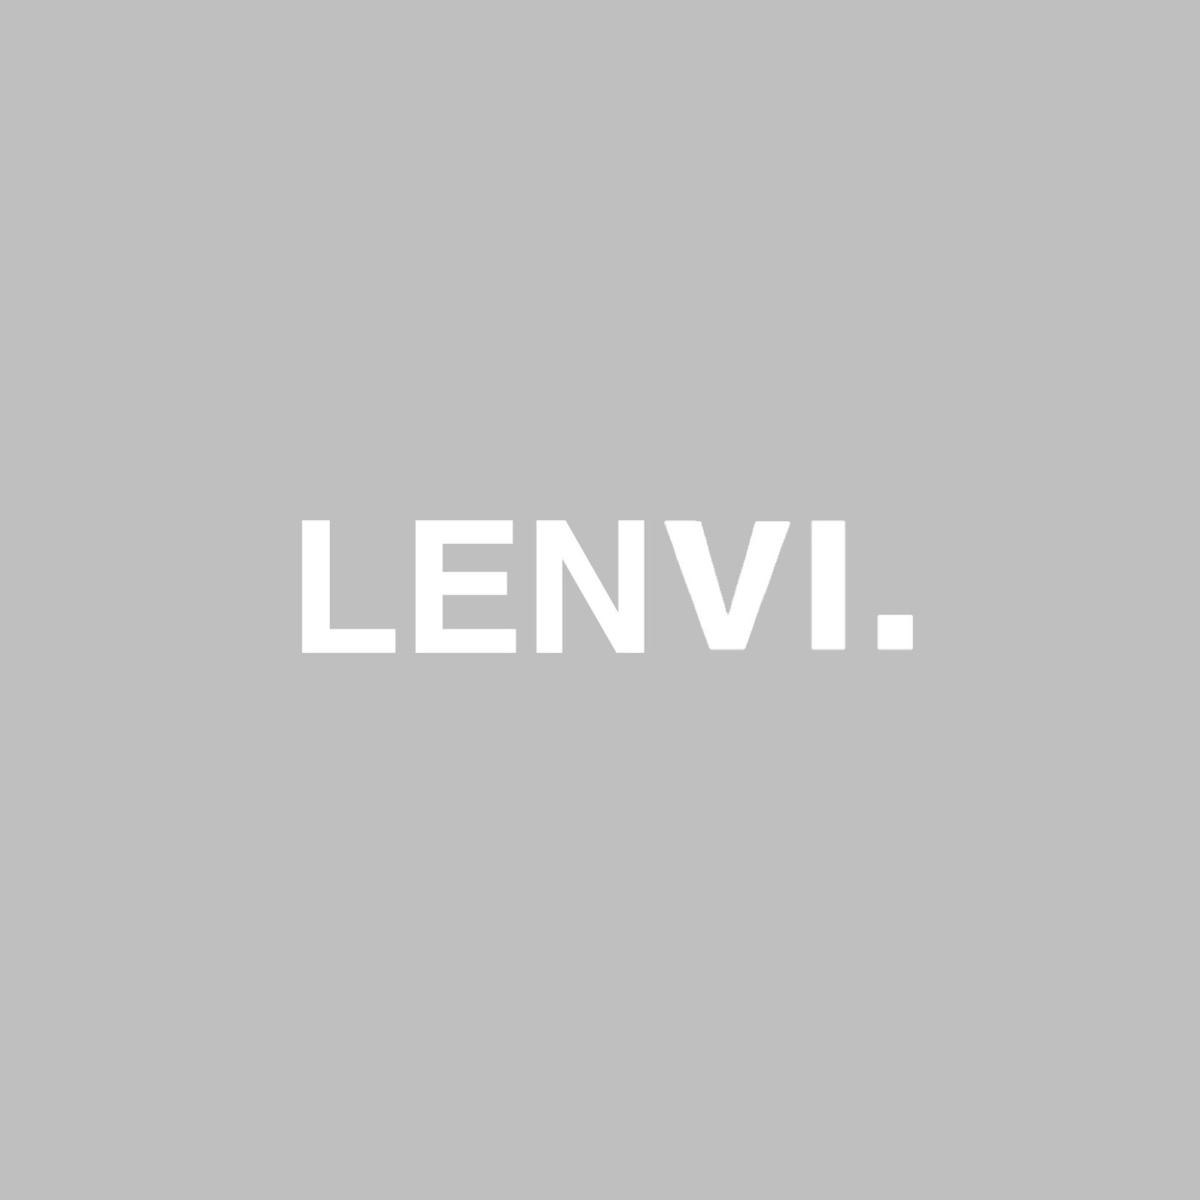 LENVIの画像